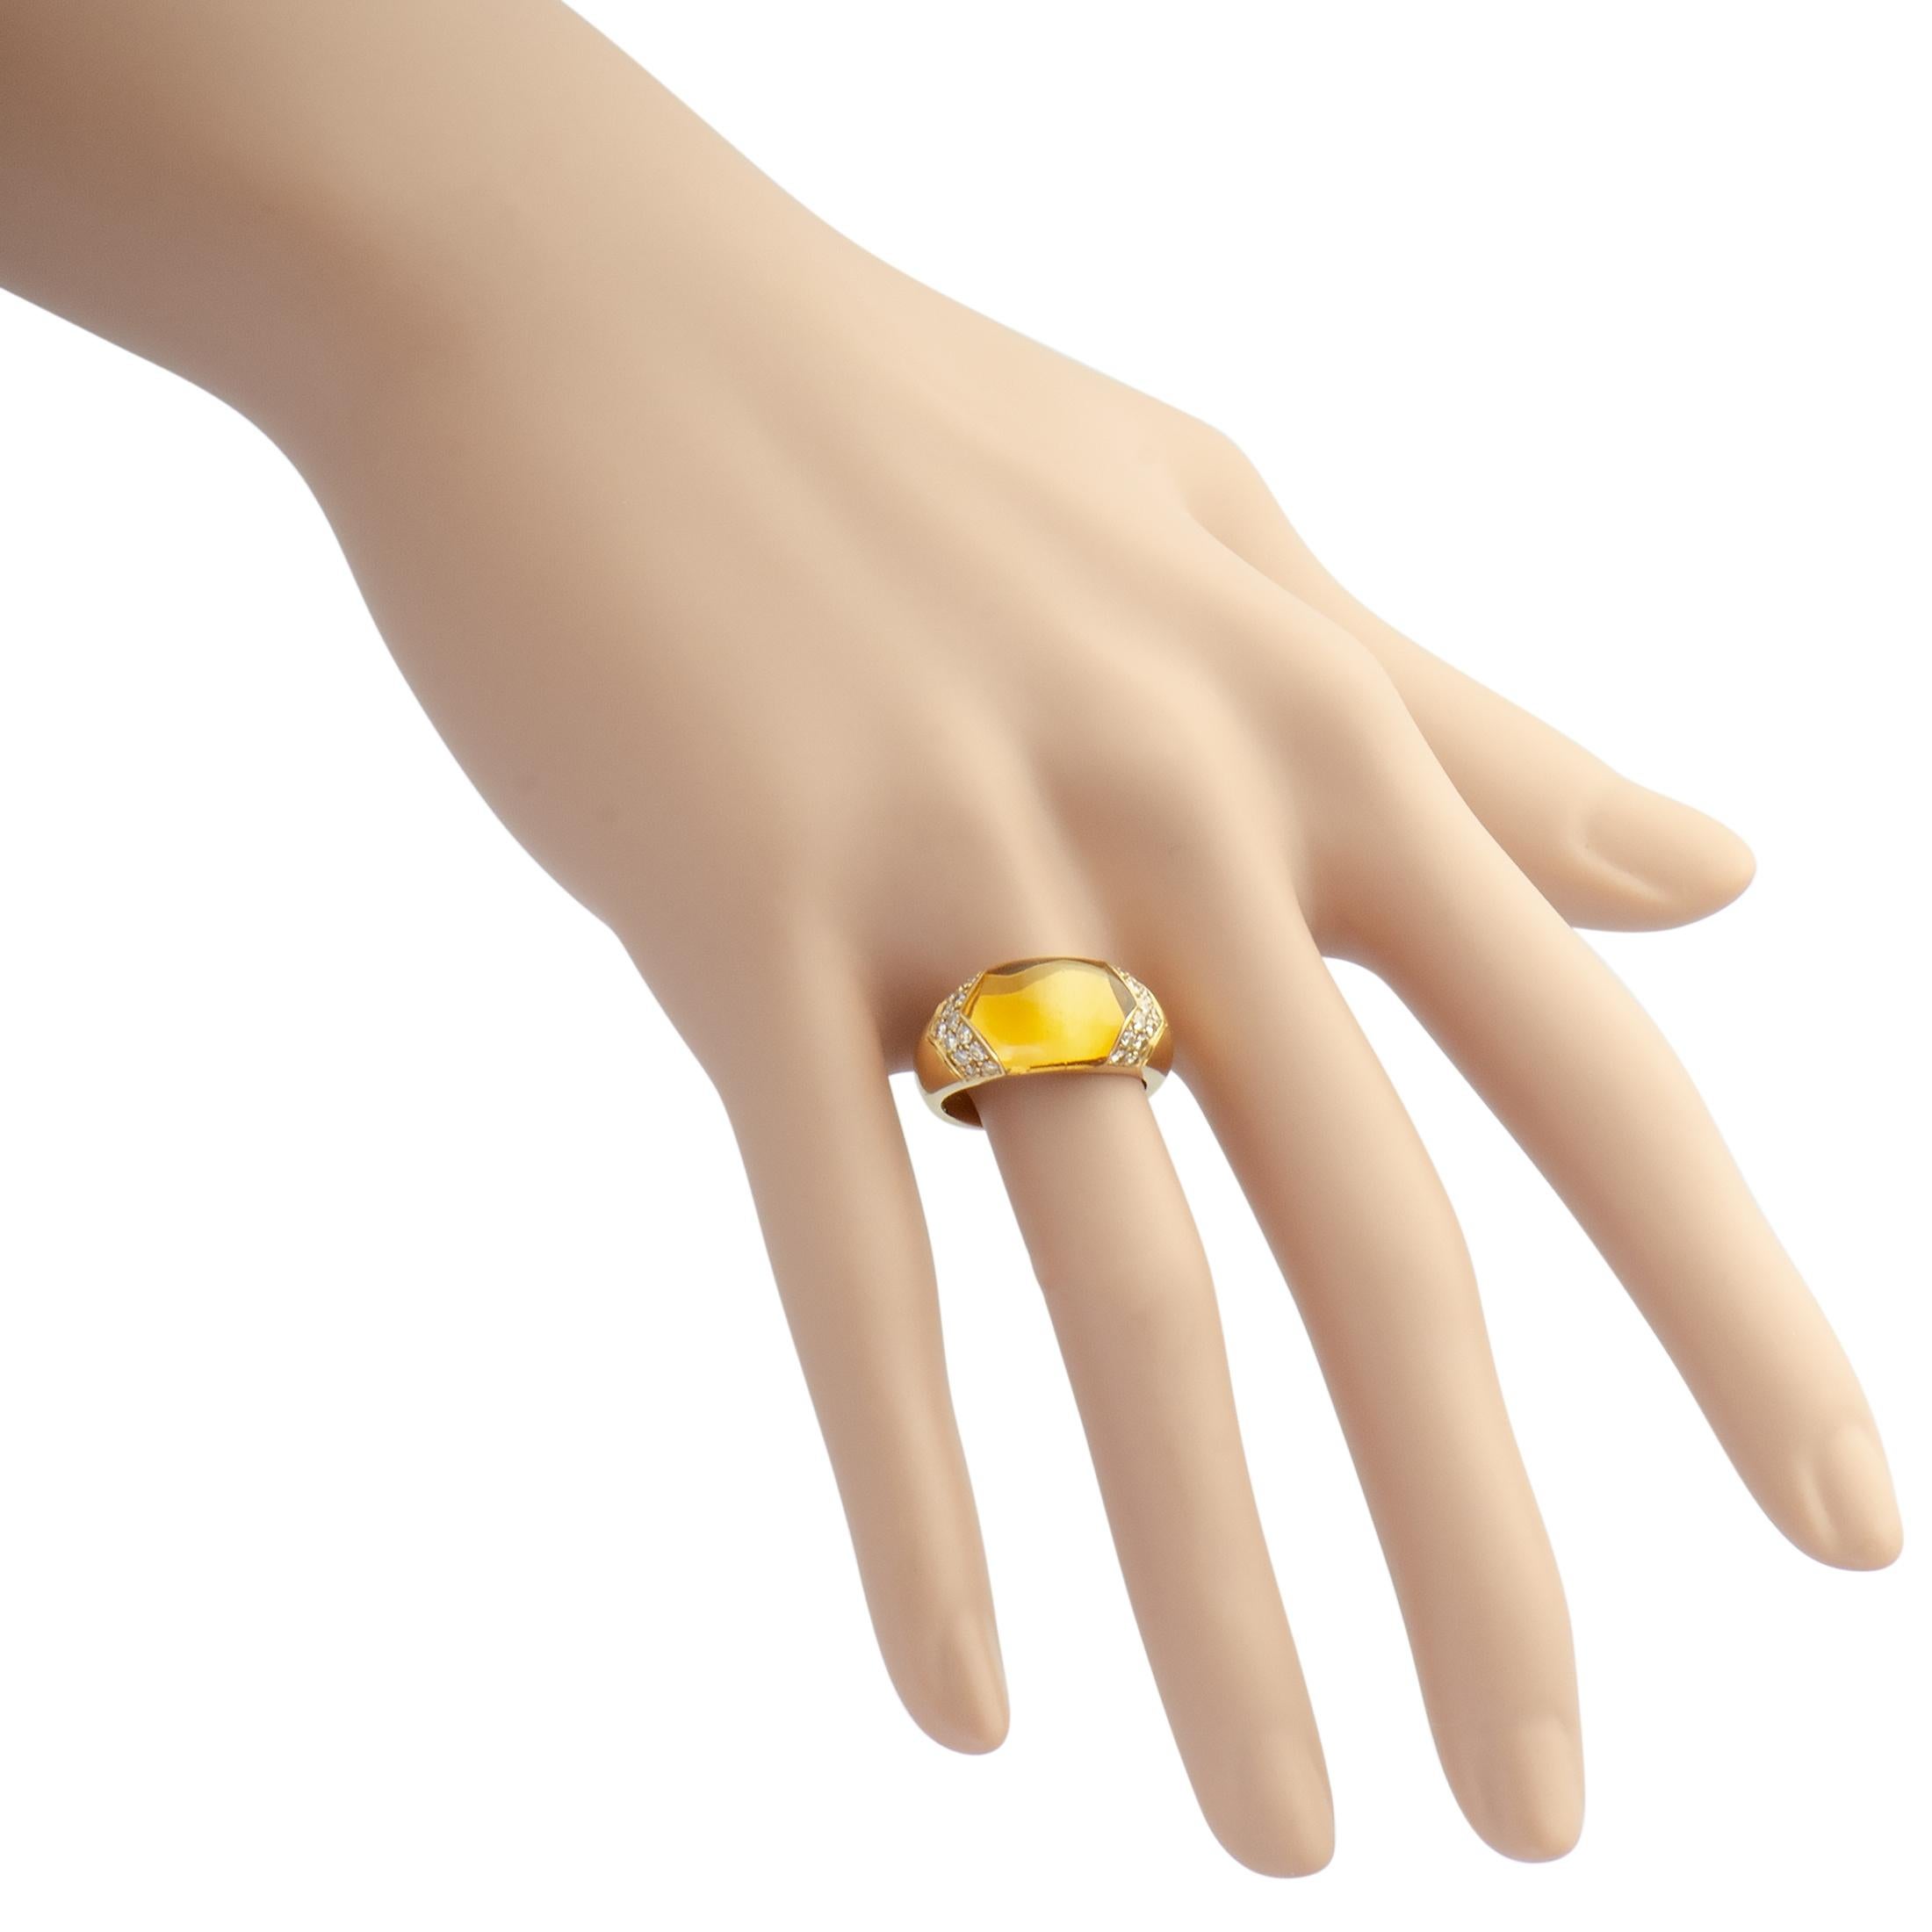 Bvlgari Tronchetto 18 Karat Yellow Gold Diamond and Citrine Ring 2